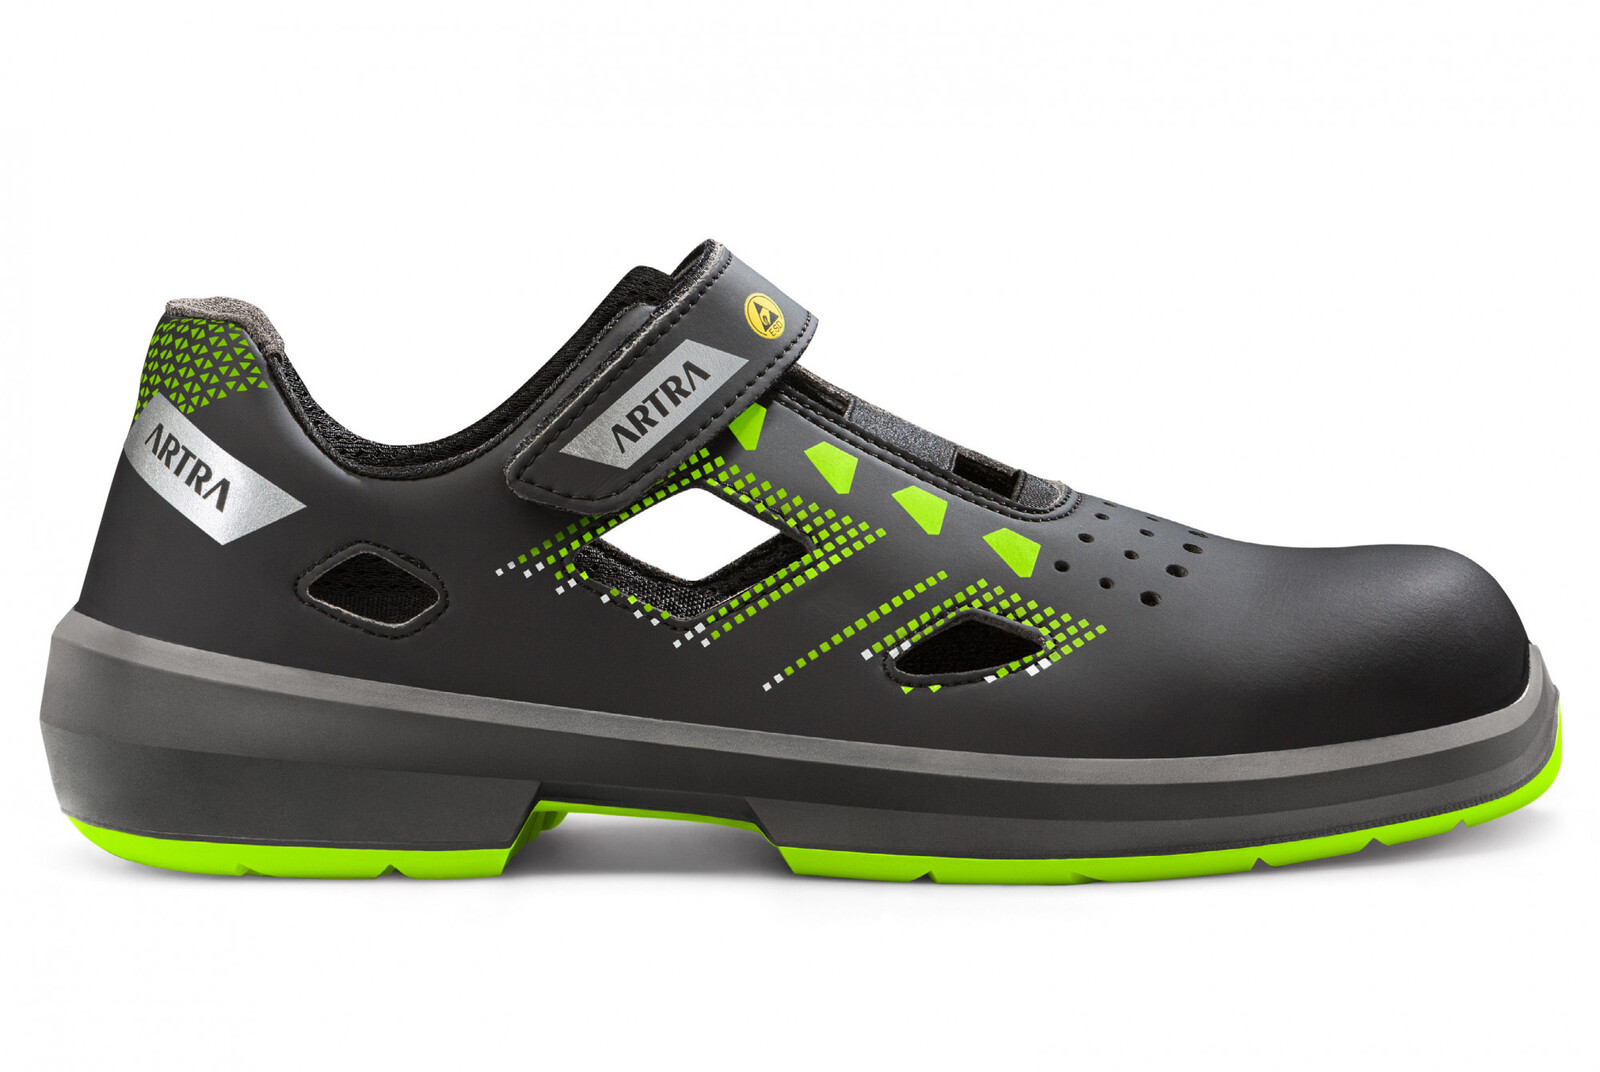 Bezpečnostné sandále Artra Arzo 805 678080 S1P SRC ESD MF - veľkosť: 47, farba: čierna/zelená